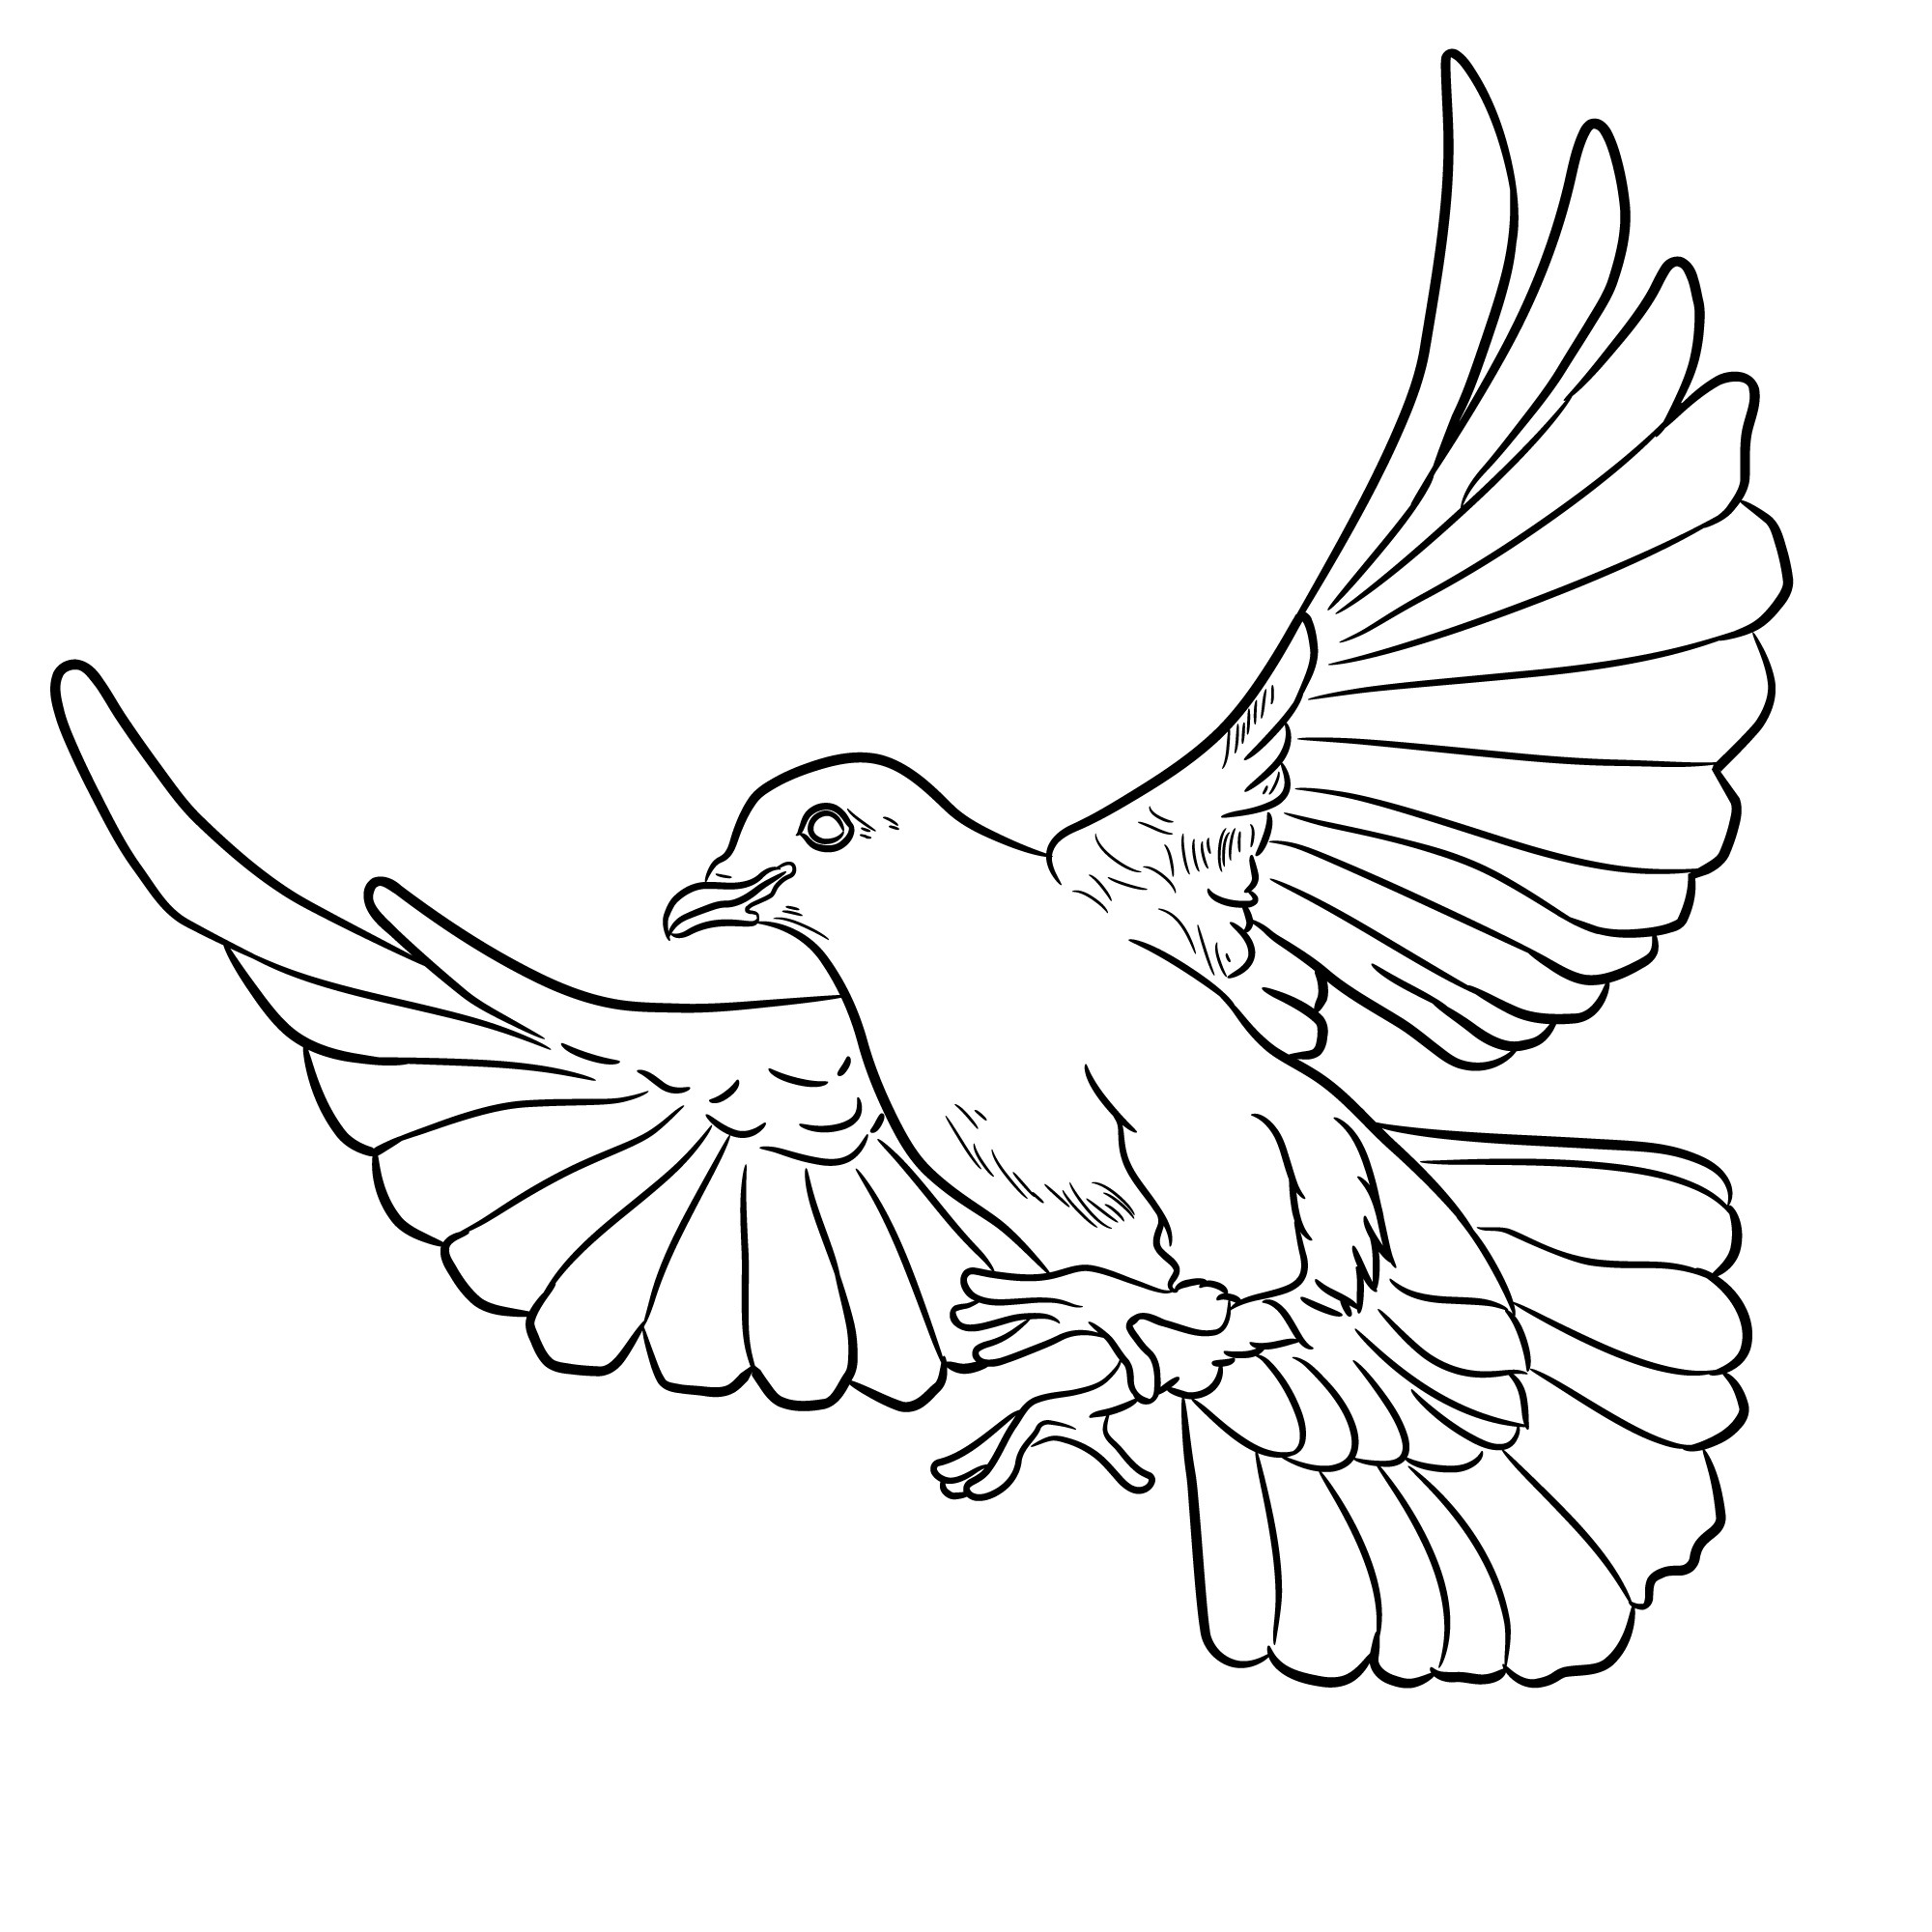 Раскраска для детей: голубь в полете с распростертыми крыльями